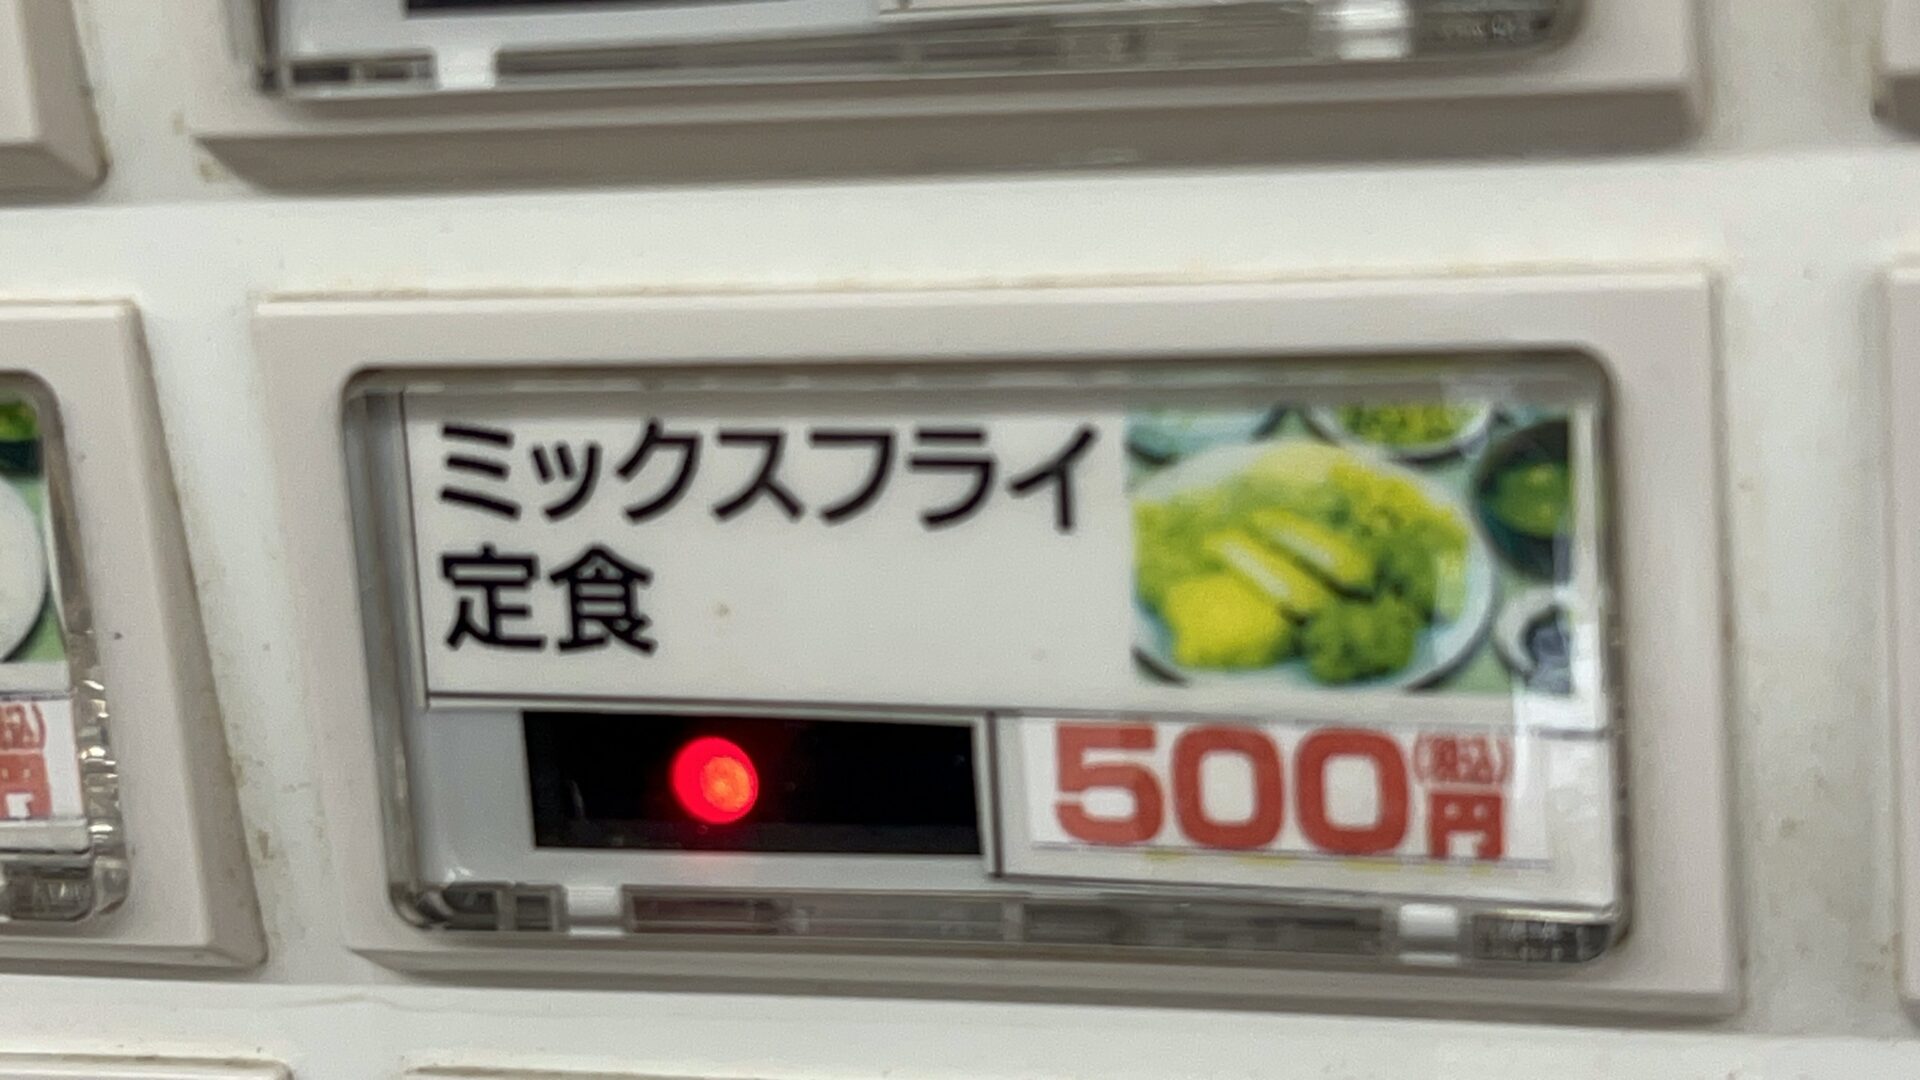 伊勢崎市もつ煮ショップミックスフライ定食券売機ボタン